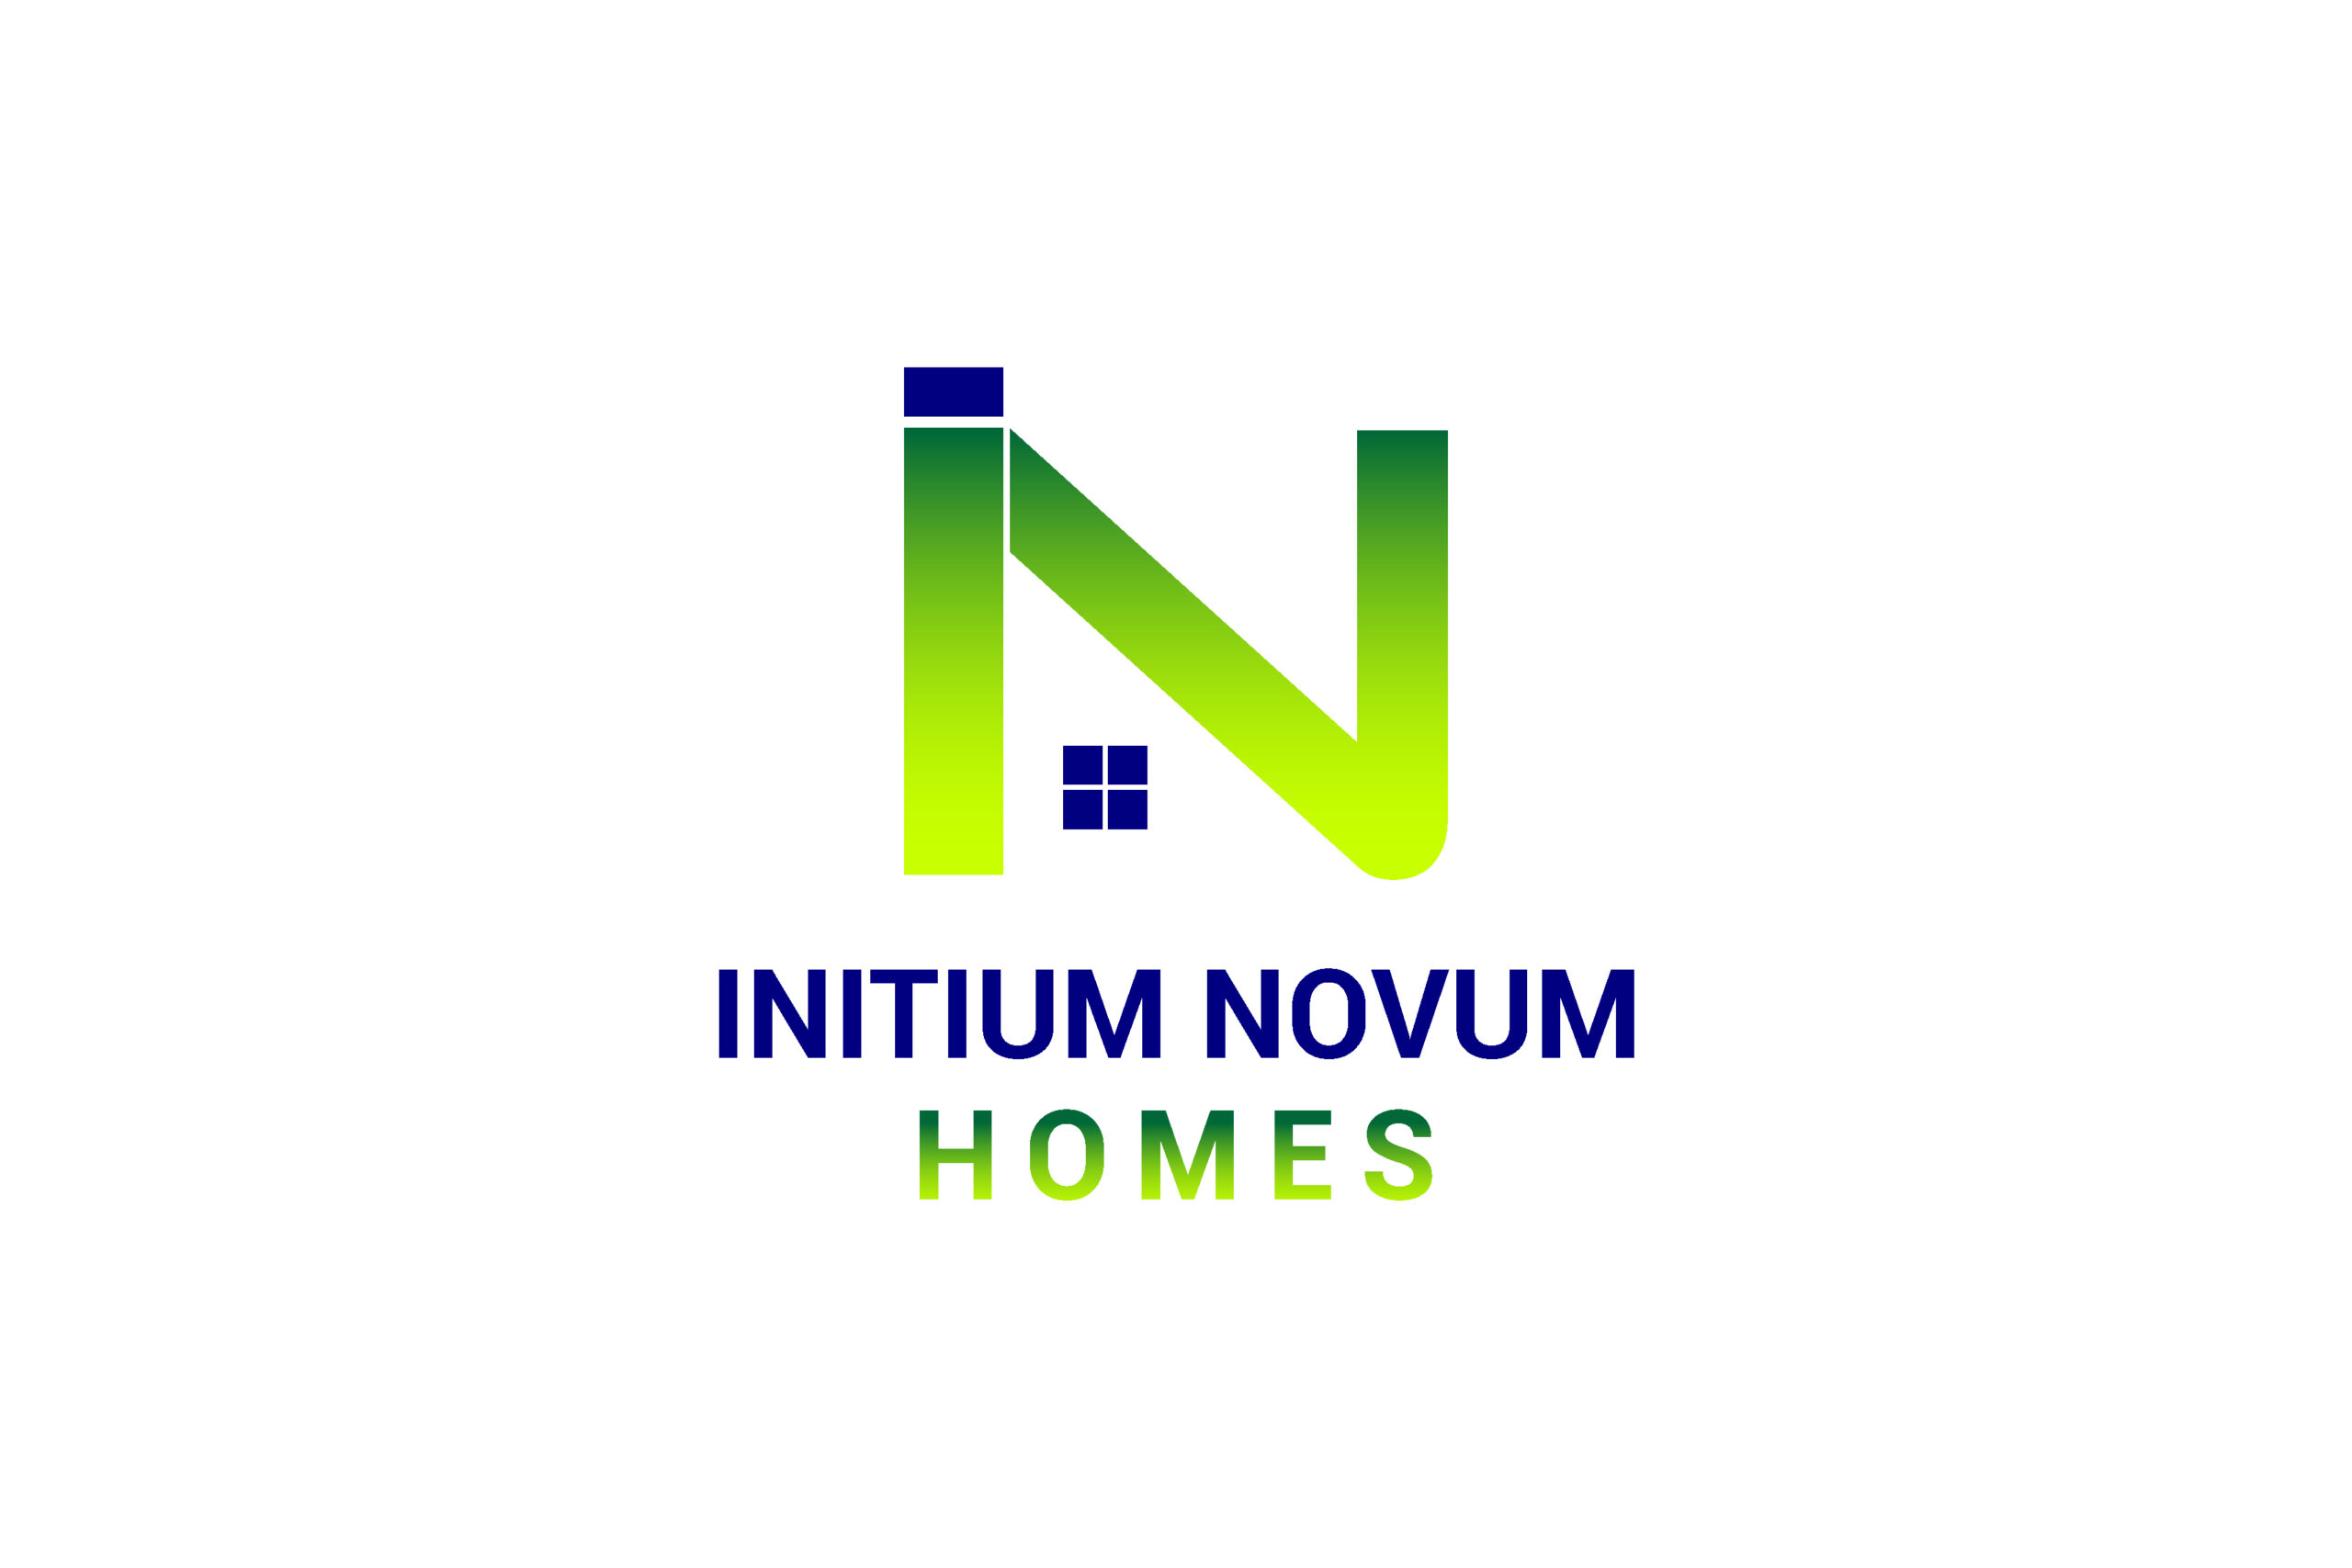 Initium Novum Homes